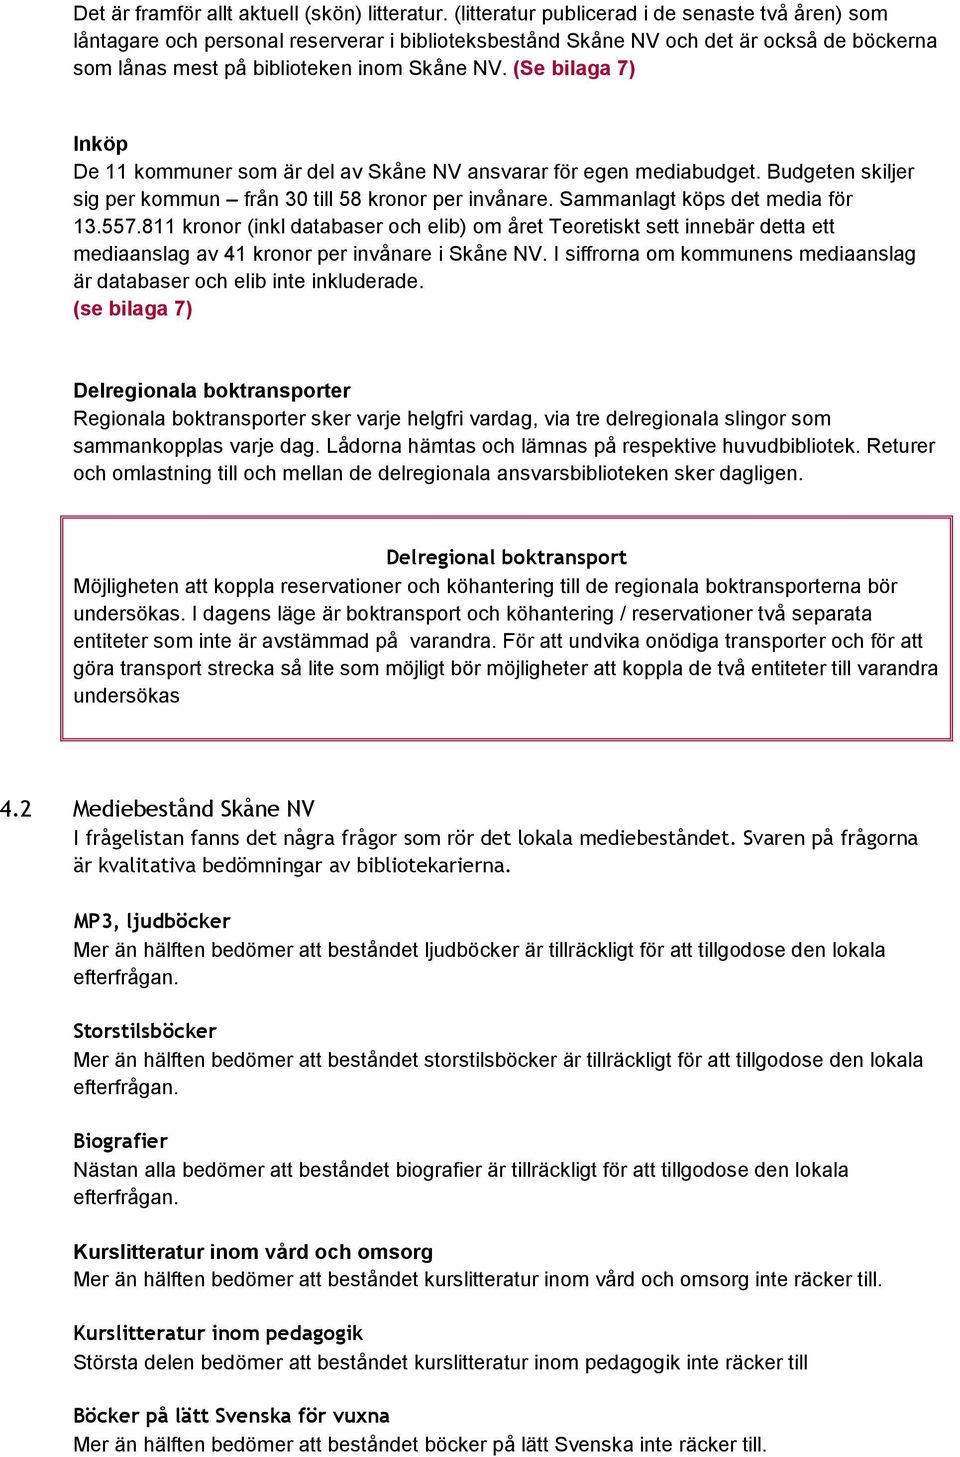 (Se bilaga 7) Inköp De 11 kommuner som är del av Skåne NV ansvarar för egen mediabudget. Budgeten skiljer sig per kommun från 30 till 58 kronor per invånare. Sammanlagt köps det media för 13.557.